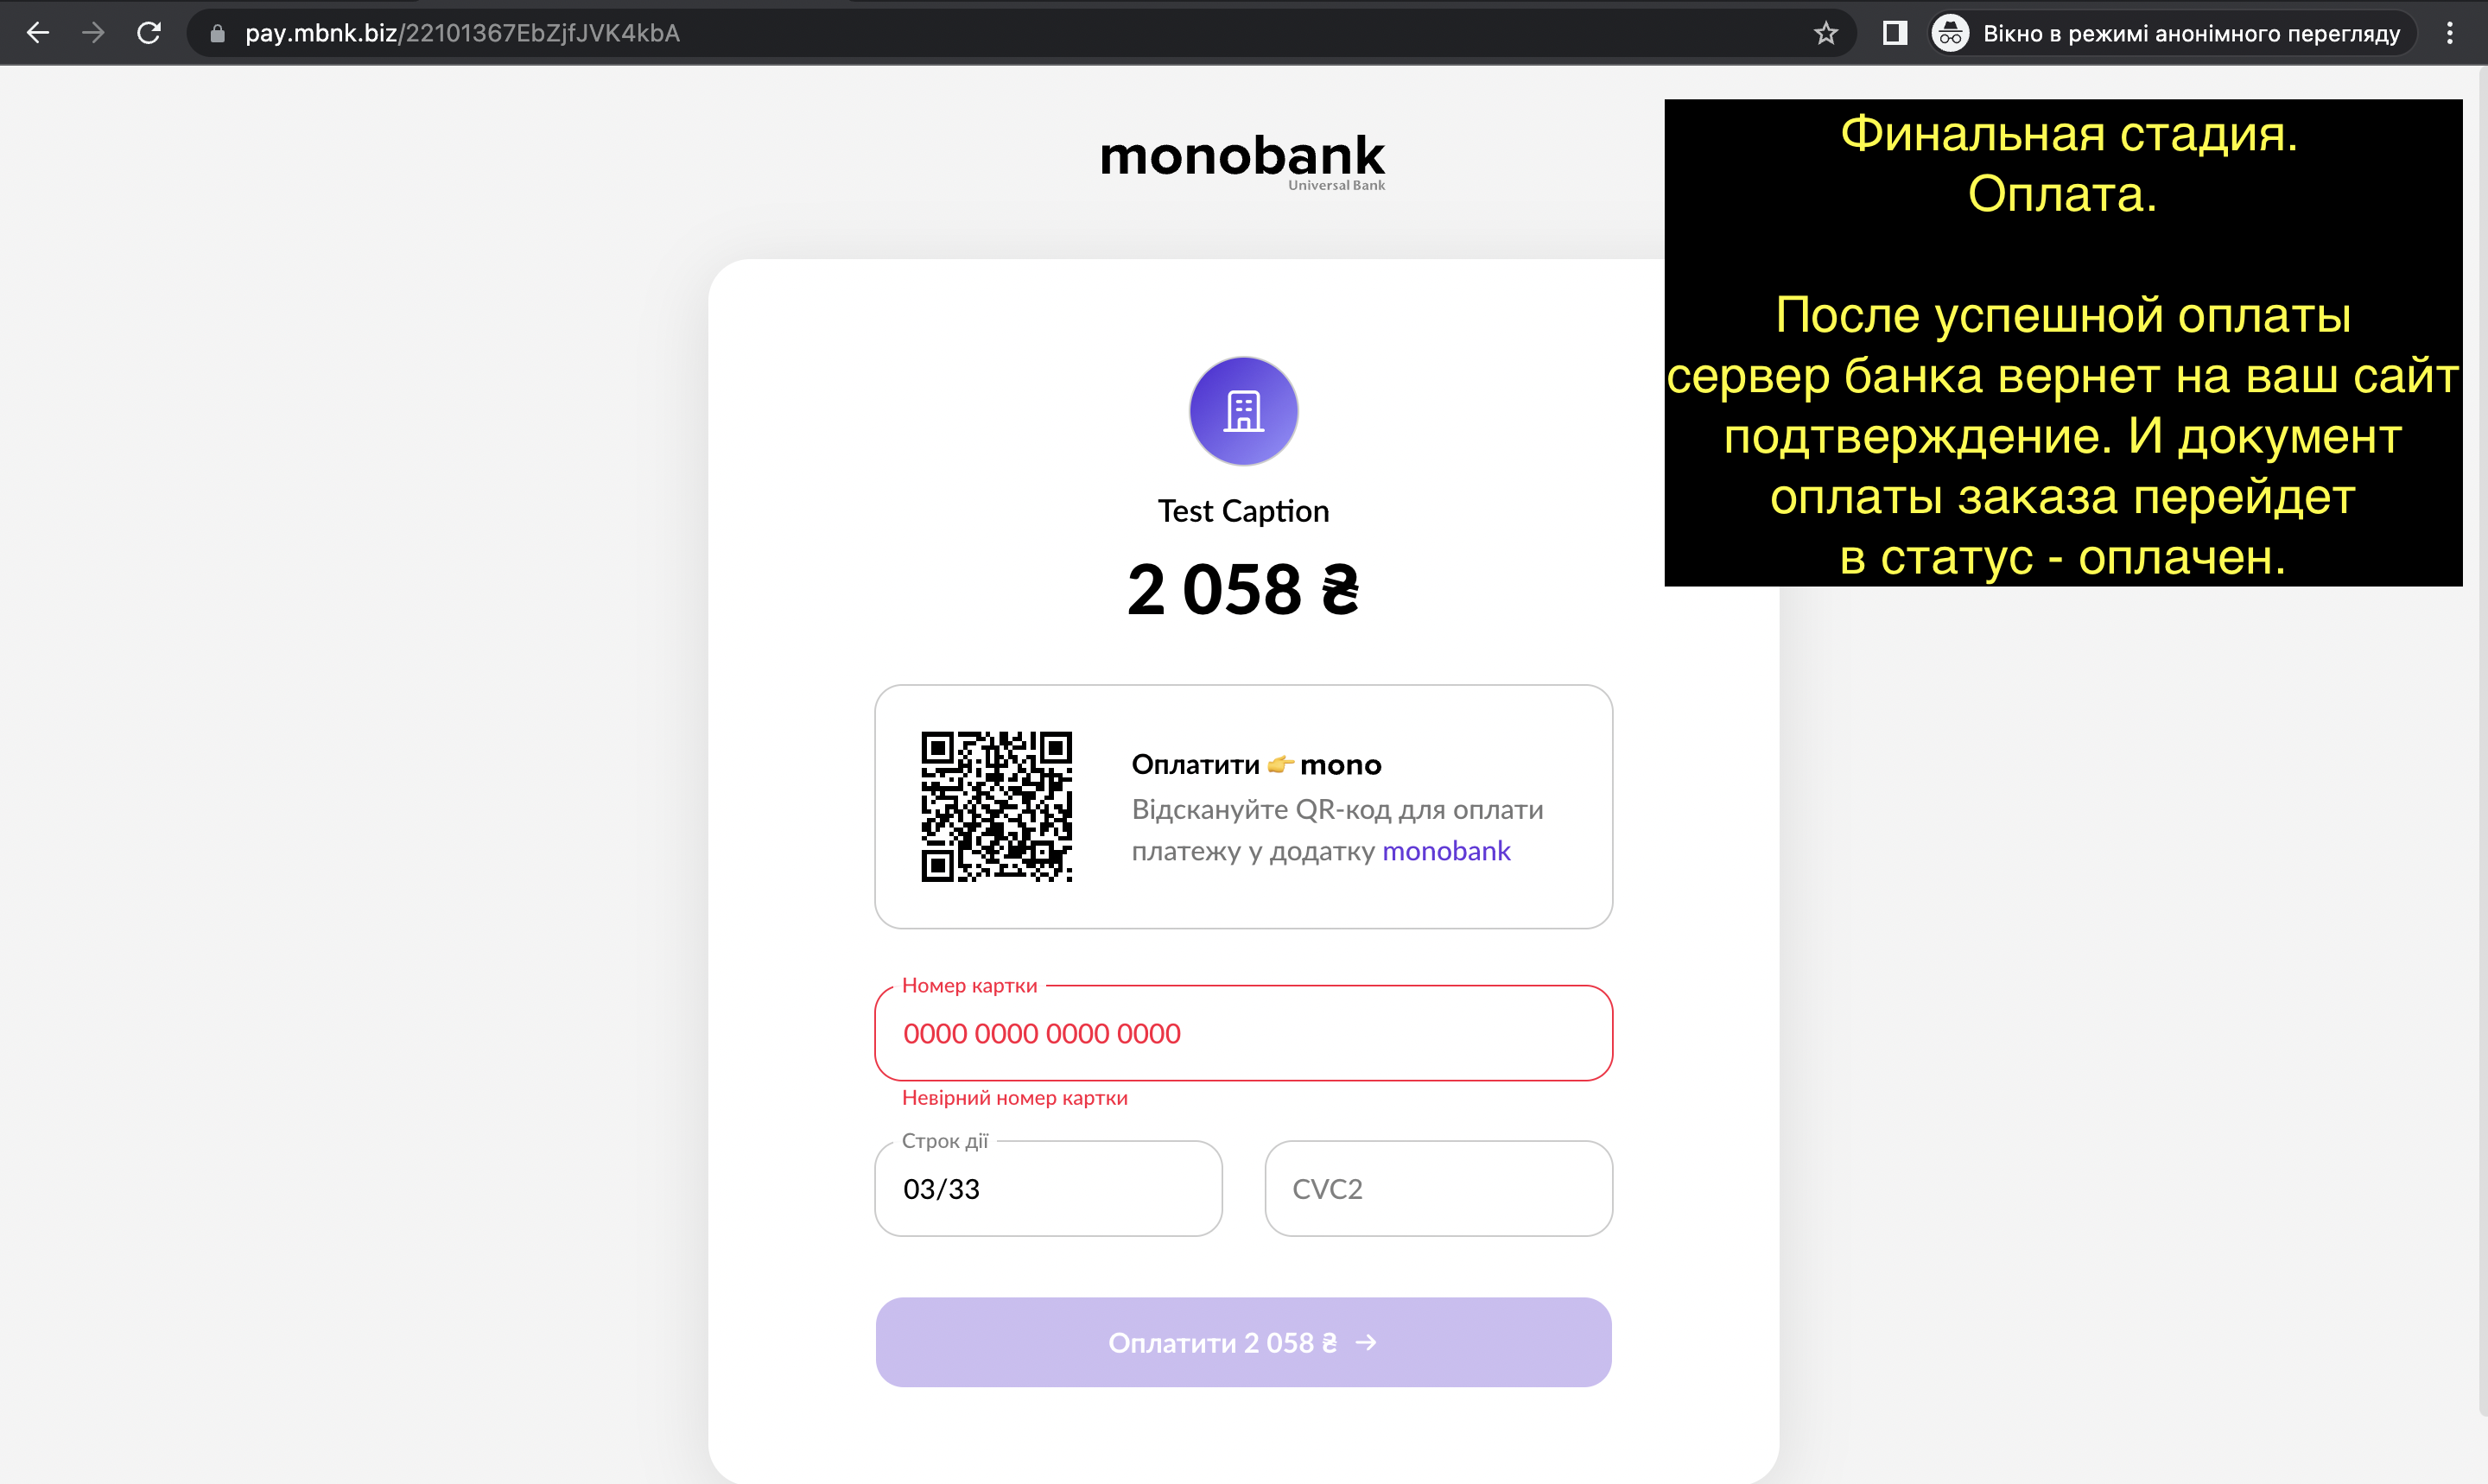 Monobank Acquiring (modulemarket.monobankacquiring) - Модуль Битрикс